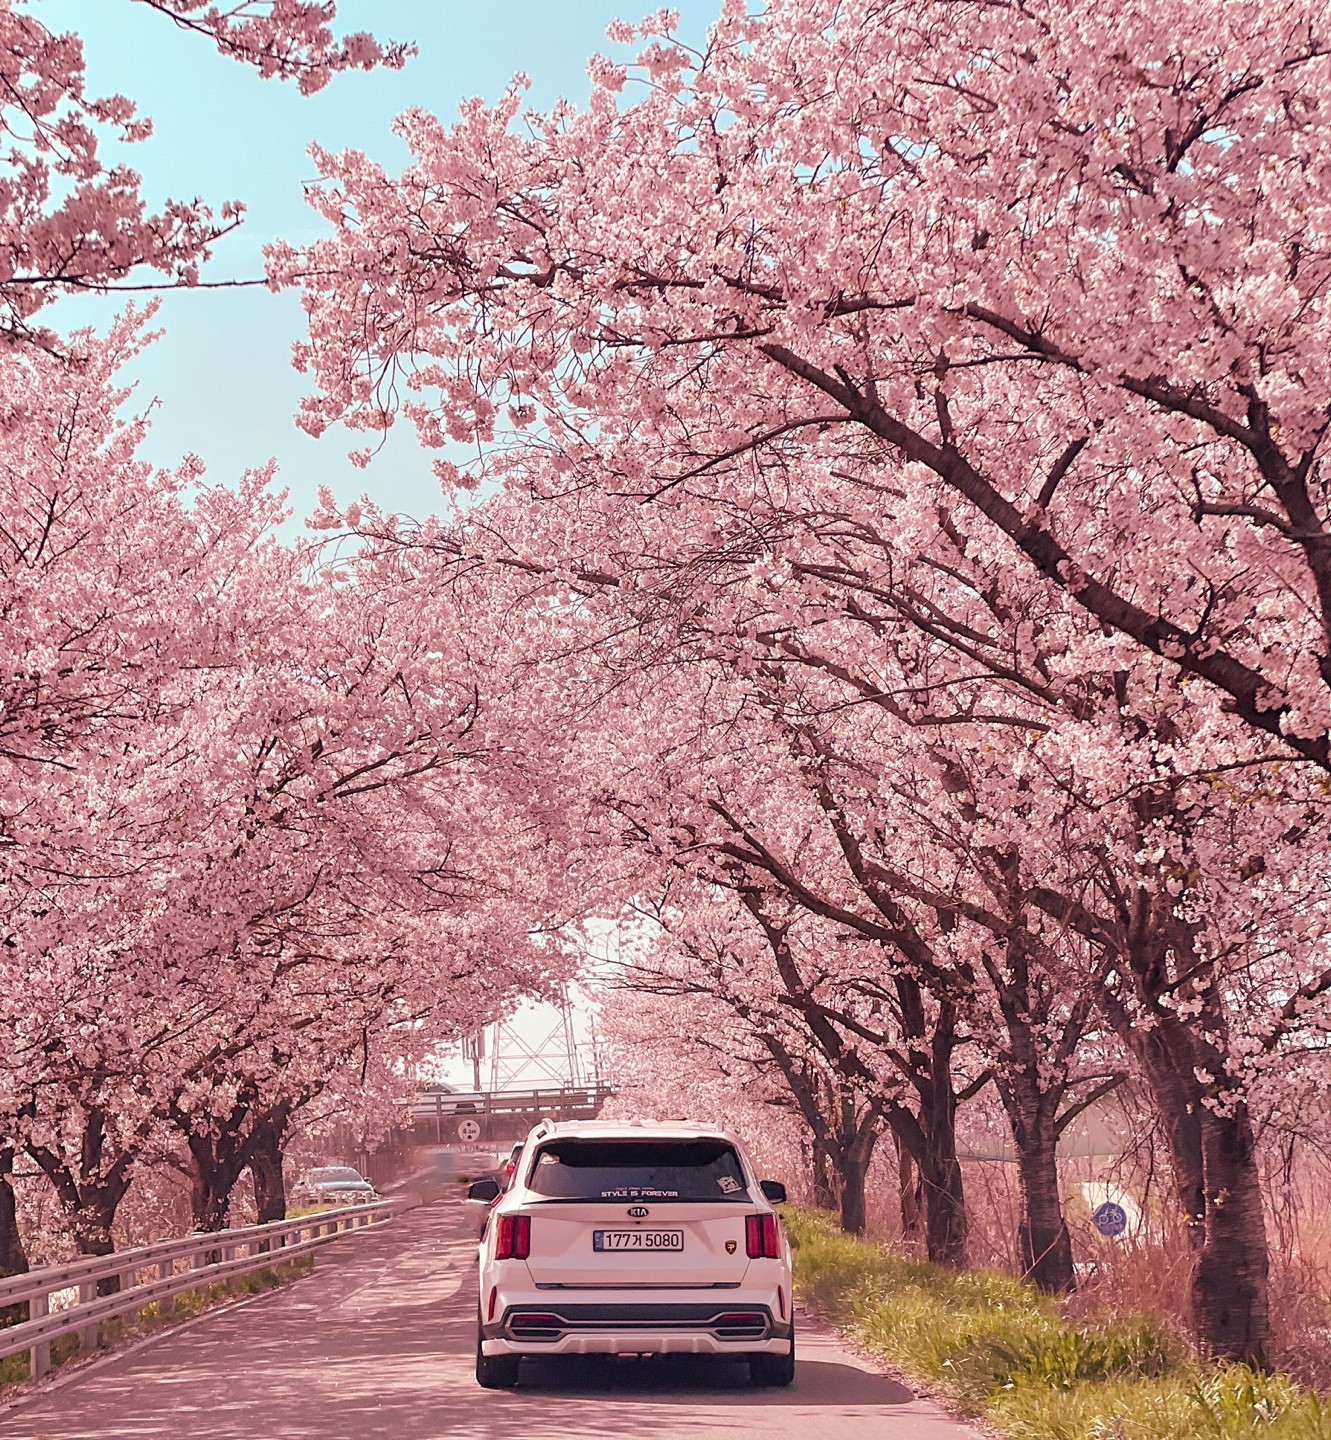 야외, 육상 차량, 차량, 나무이(가) 표시된 사진

자동 생성된 설명